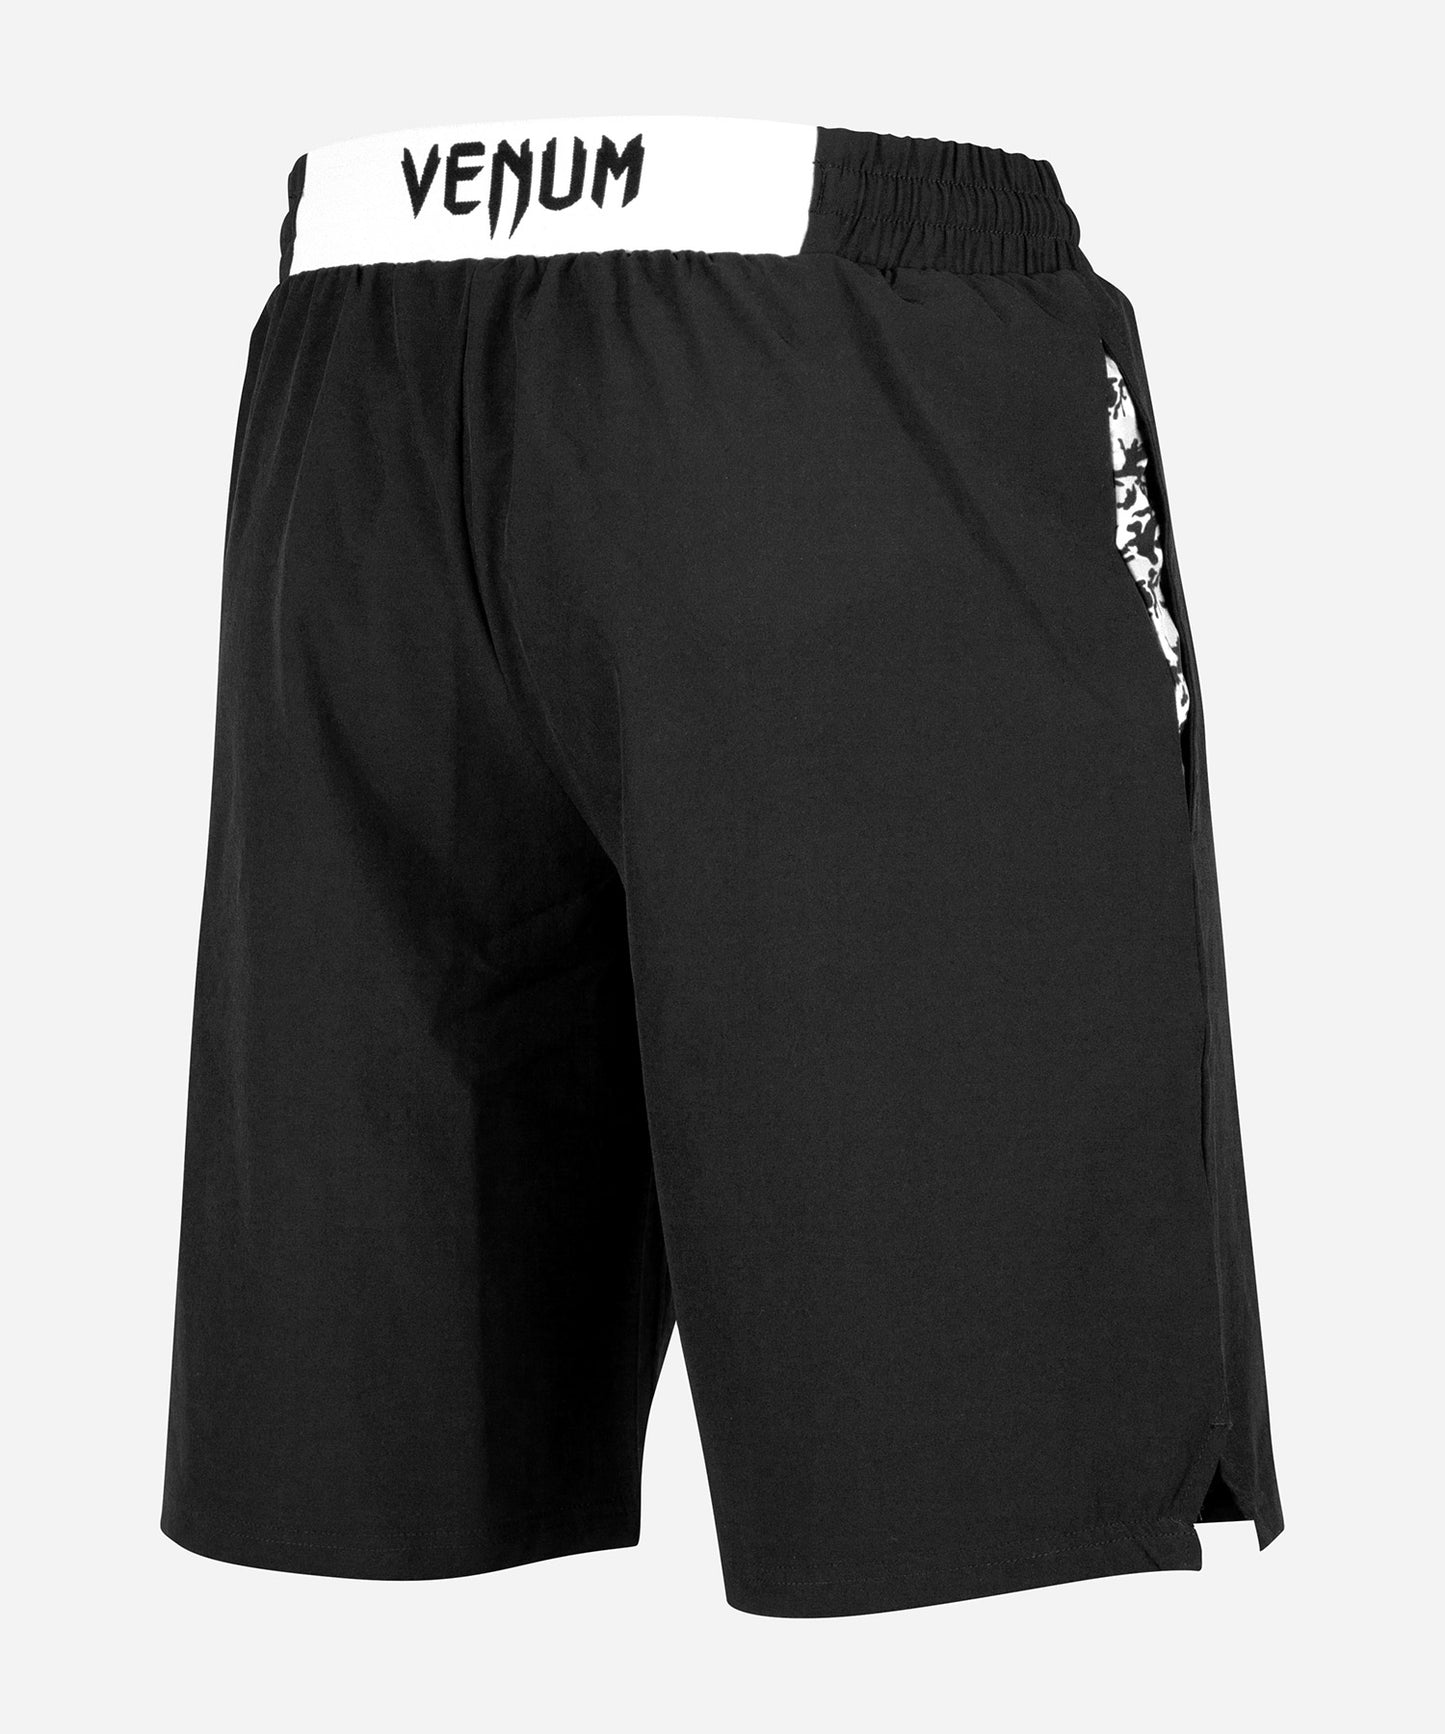 Pantalón corto de entrenamiento Venum Classic - Negro/Blanco